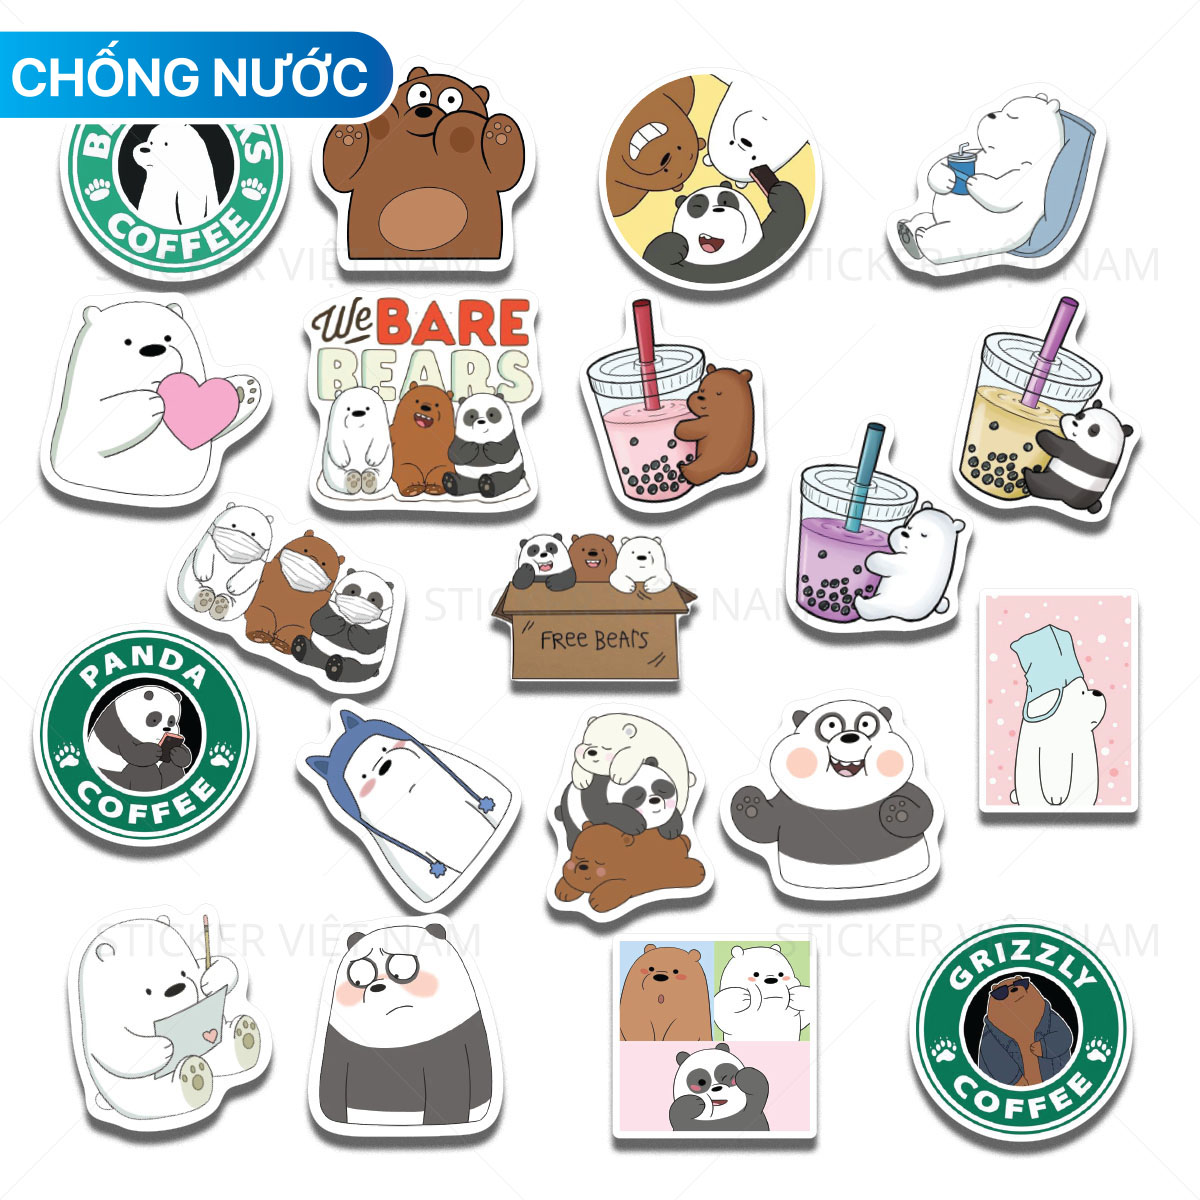 Sticker Ba Chú Gấu - We Bare Bears Siêu Dễ Thương - Chất Liệu PVC Chất Lượng Cao Chống Nước - Kích Thước 4-8cm